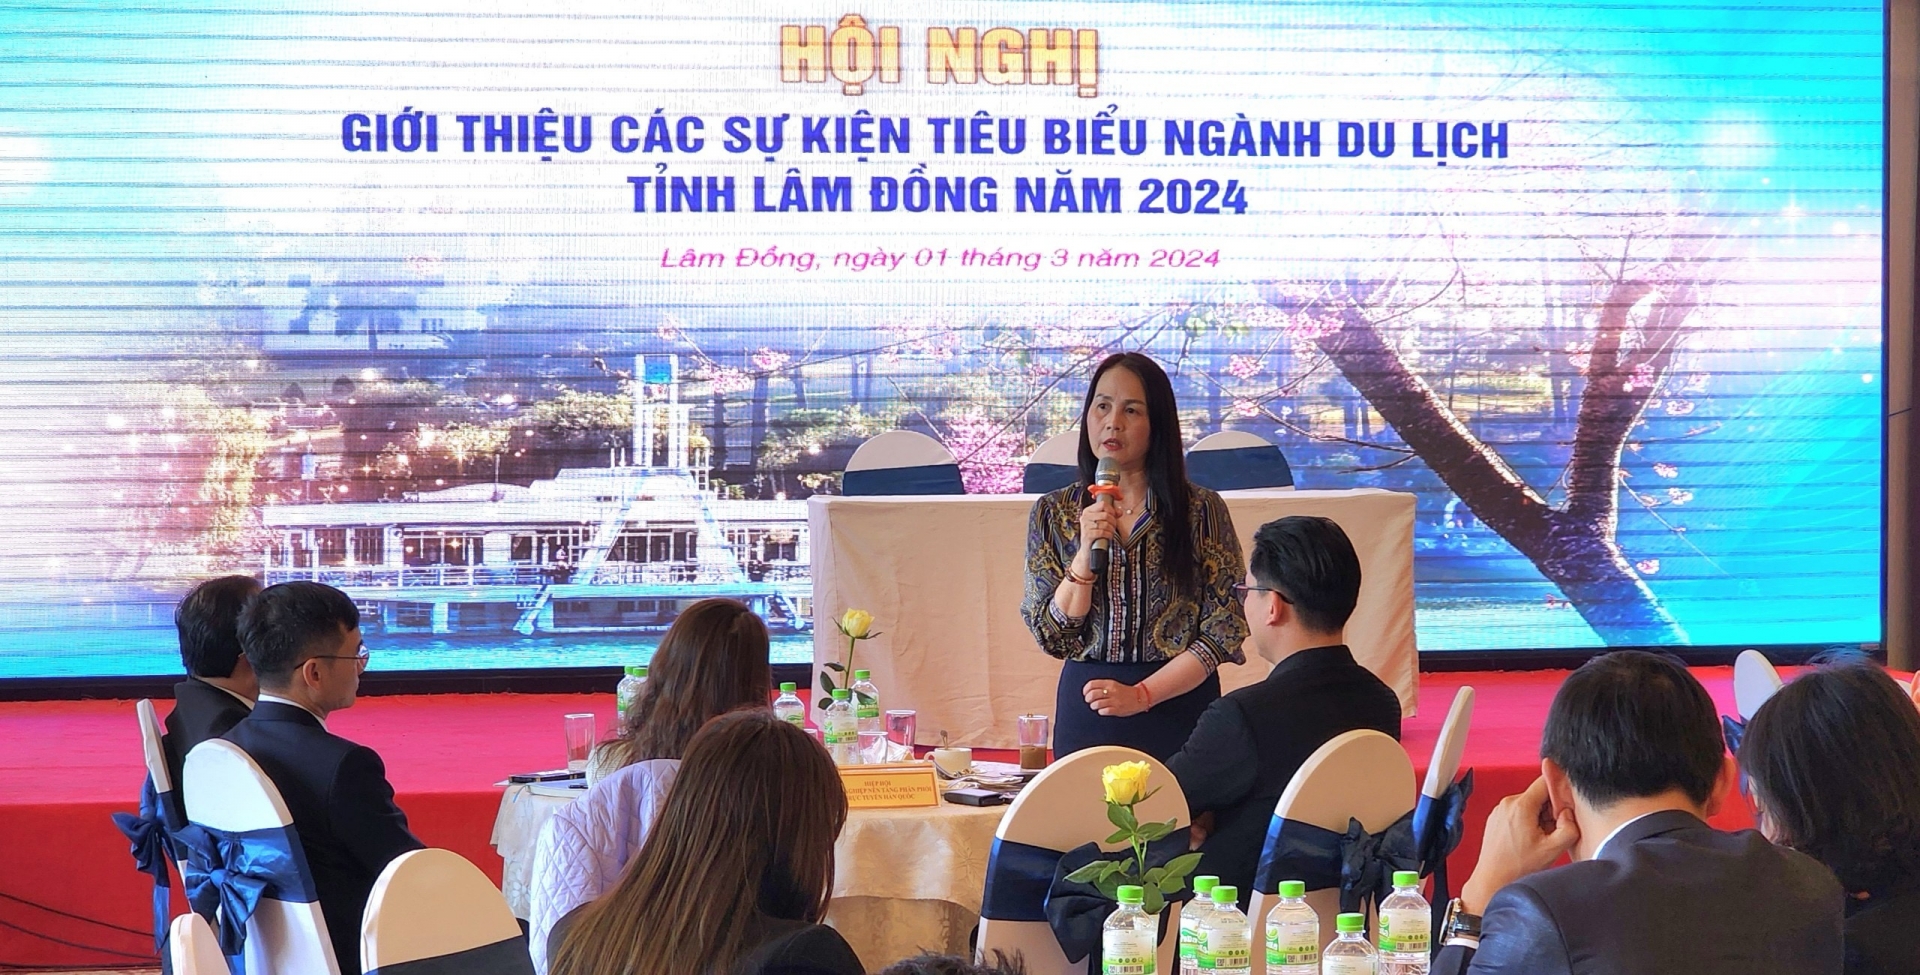 Lâm Đồng nỗ lực hút khách du lịch với loạt sự kiện lớn năm 2024